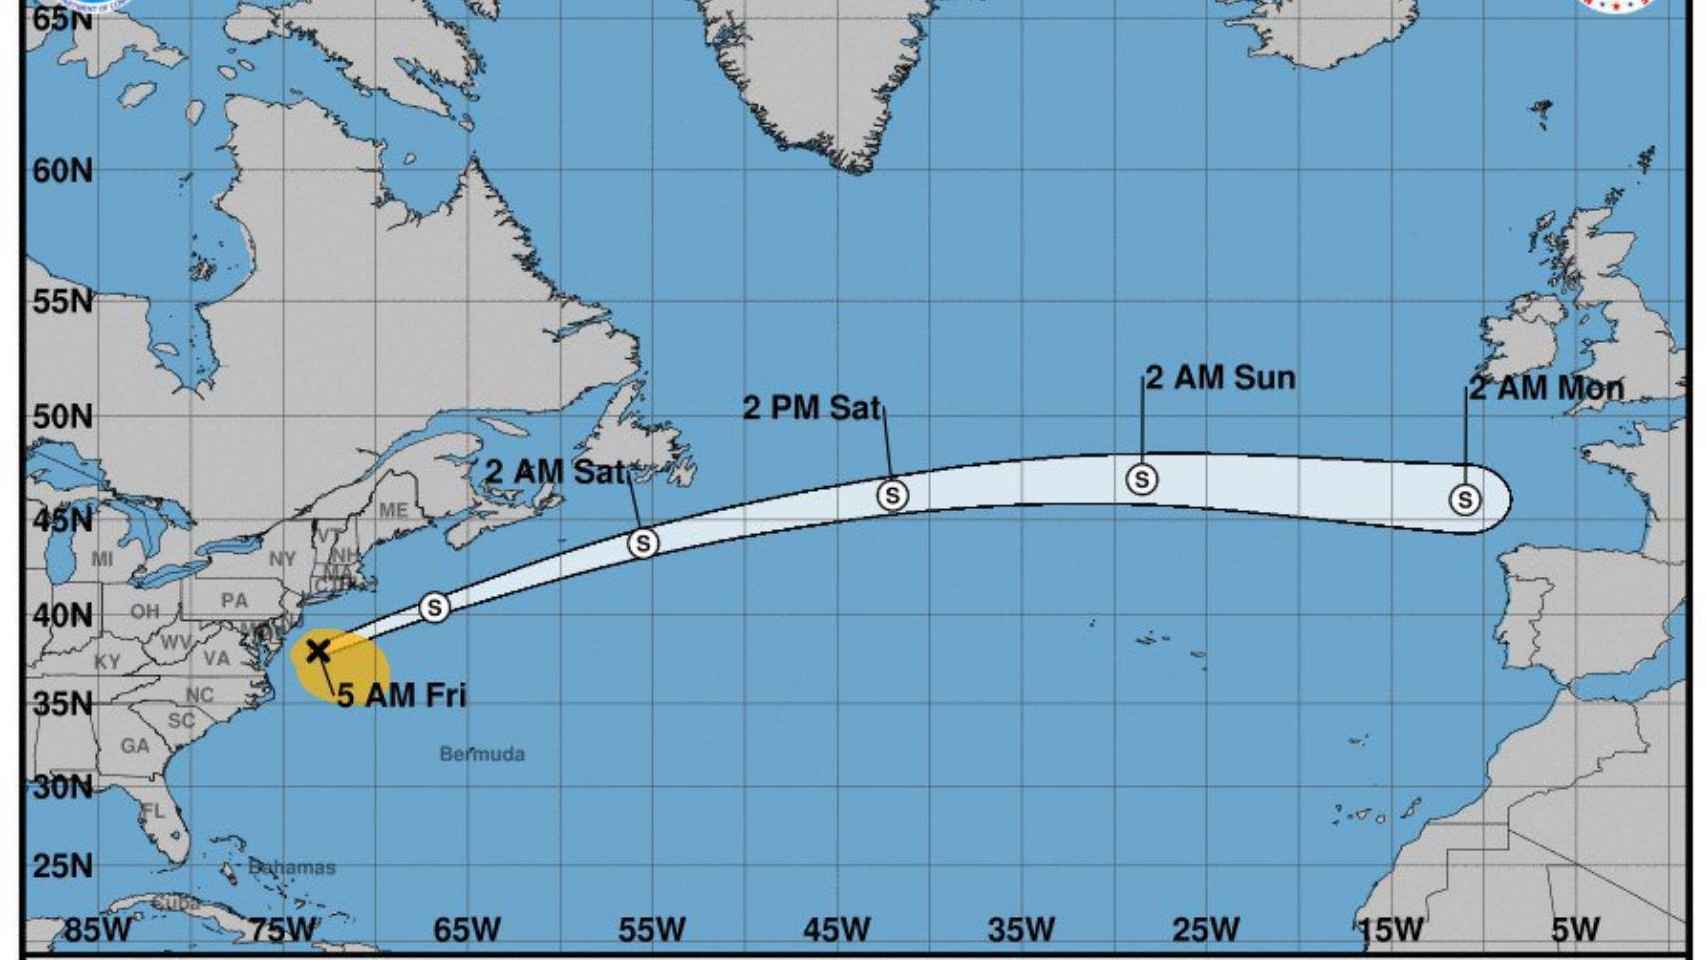 El desplazamiento del huracán Michael a través del Atlántico durante el fin de semana en la última previsión del NHC.